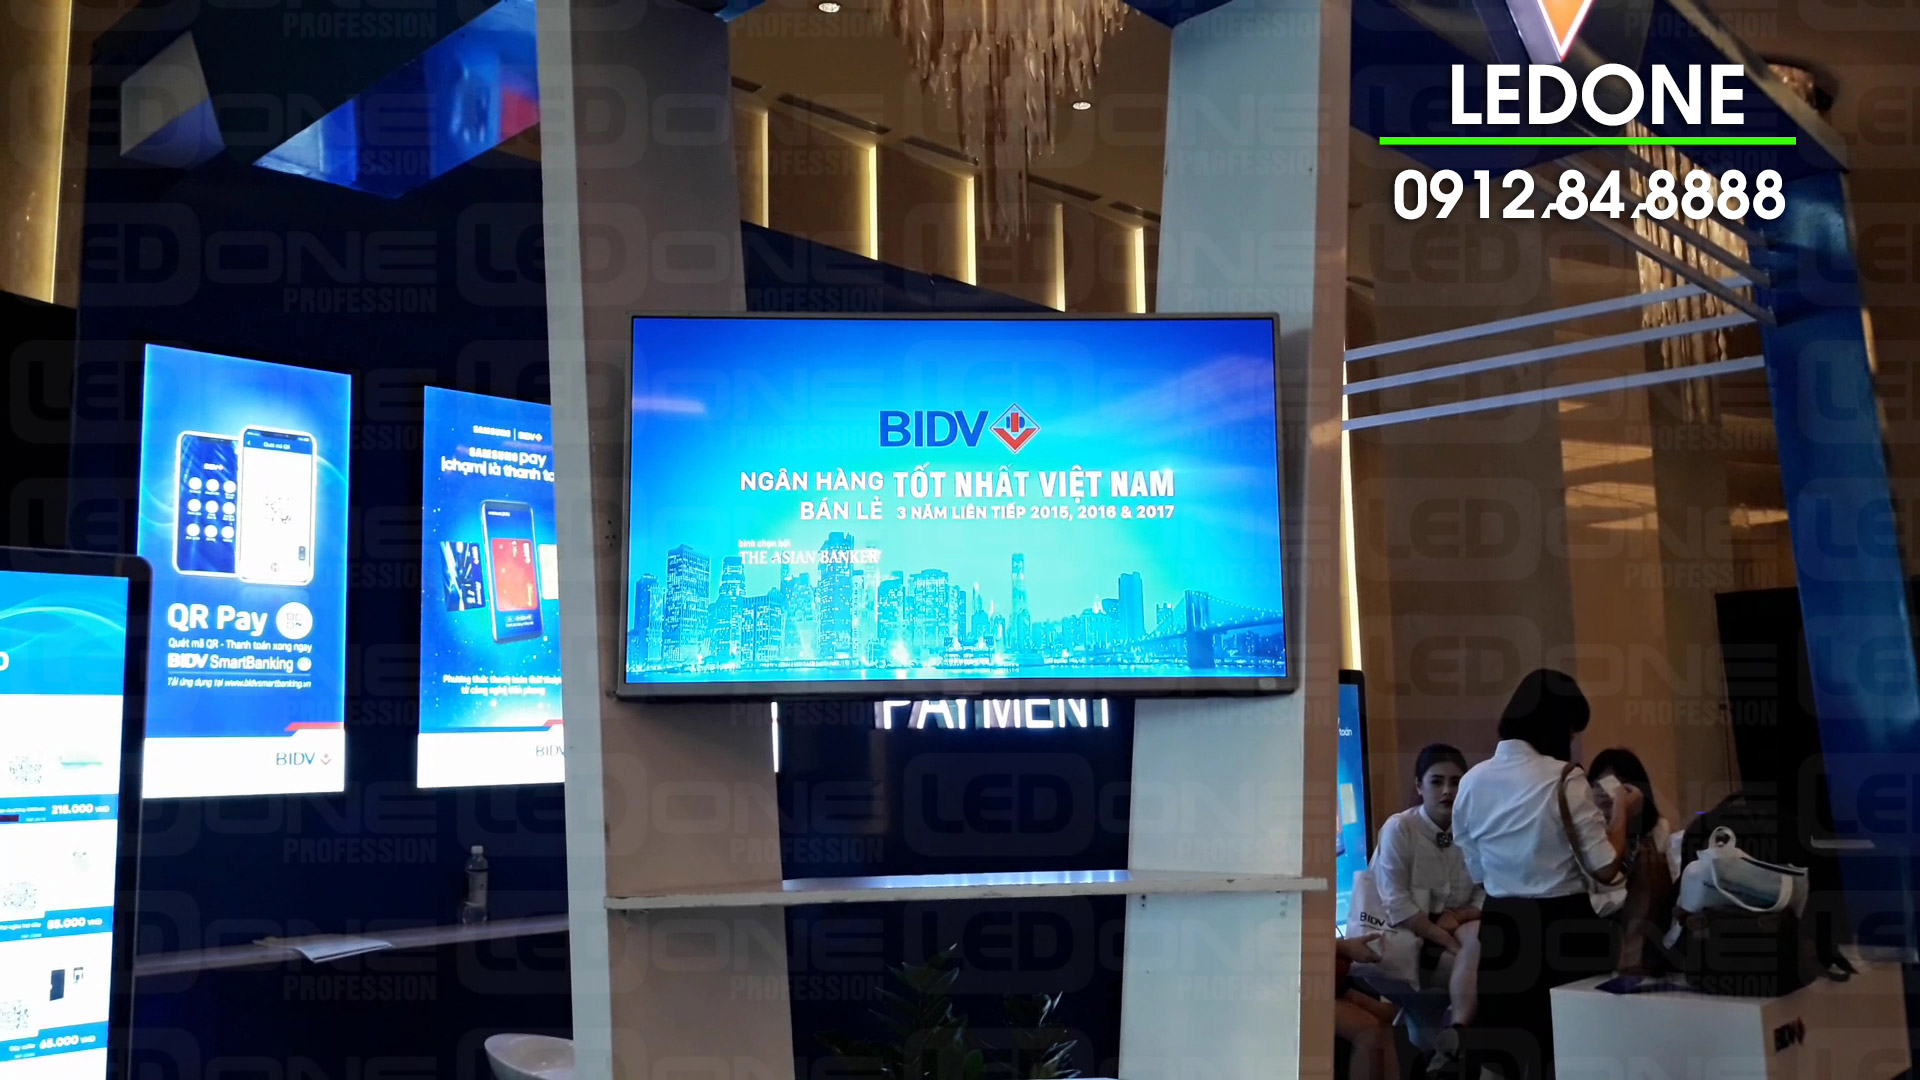 Tivi chạy quảng cáo thi công tại ngân hàng BIDV